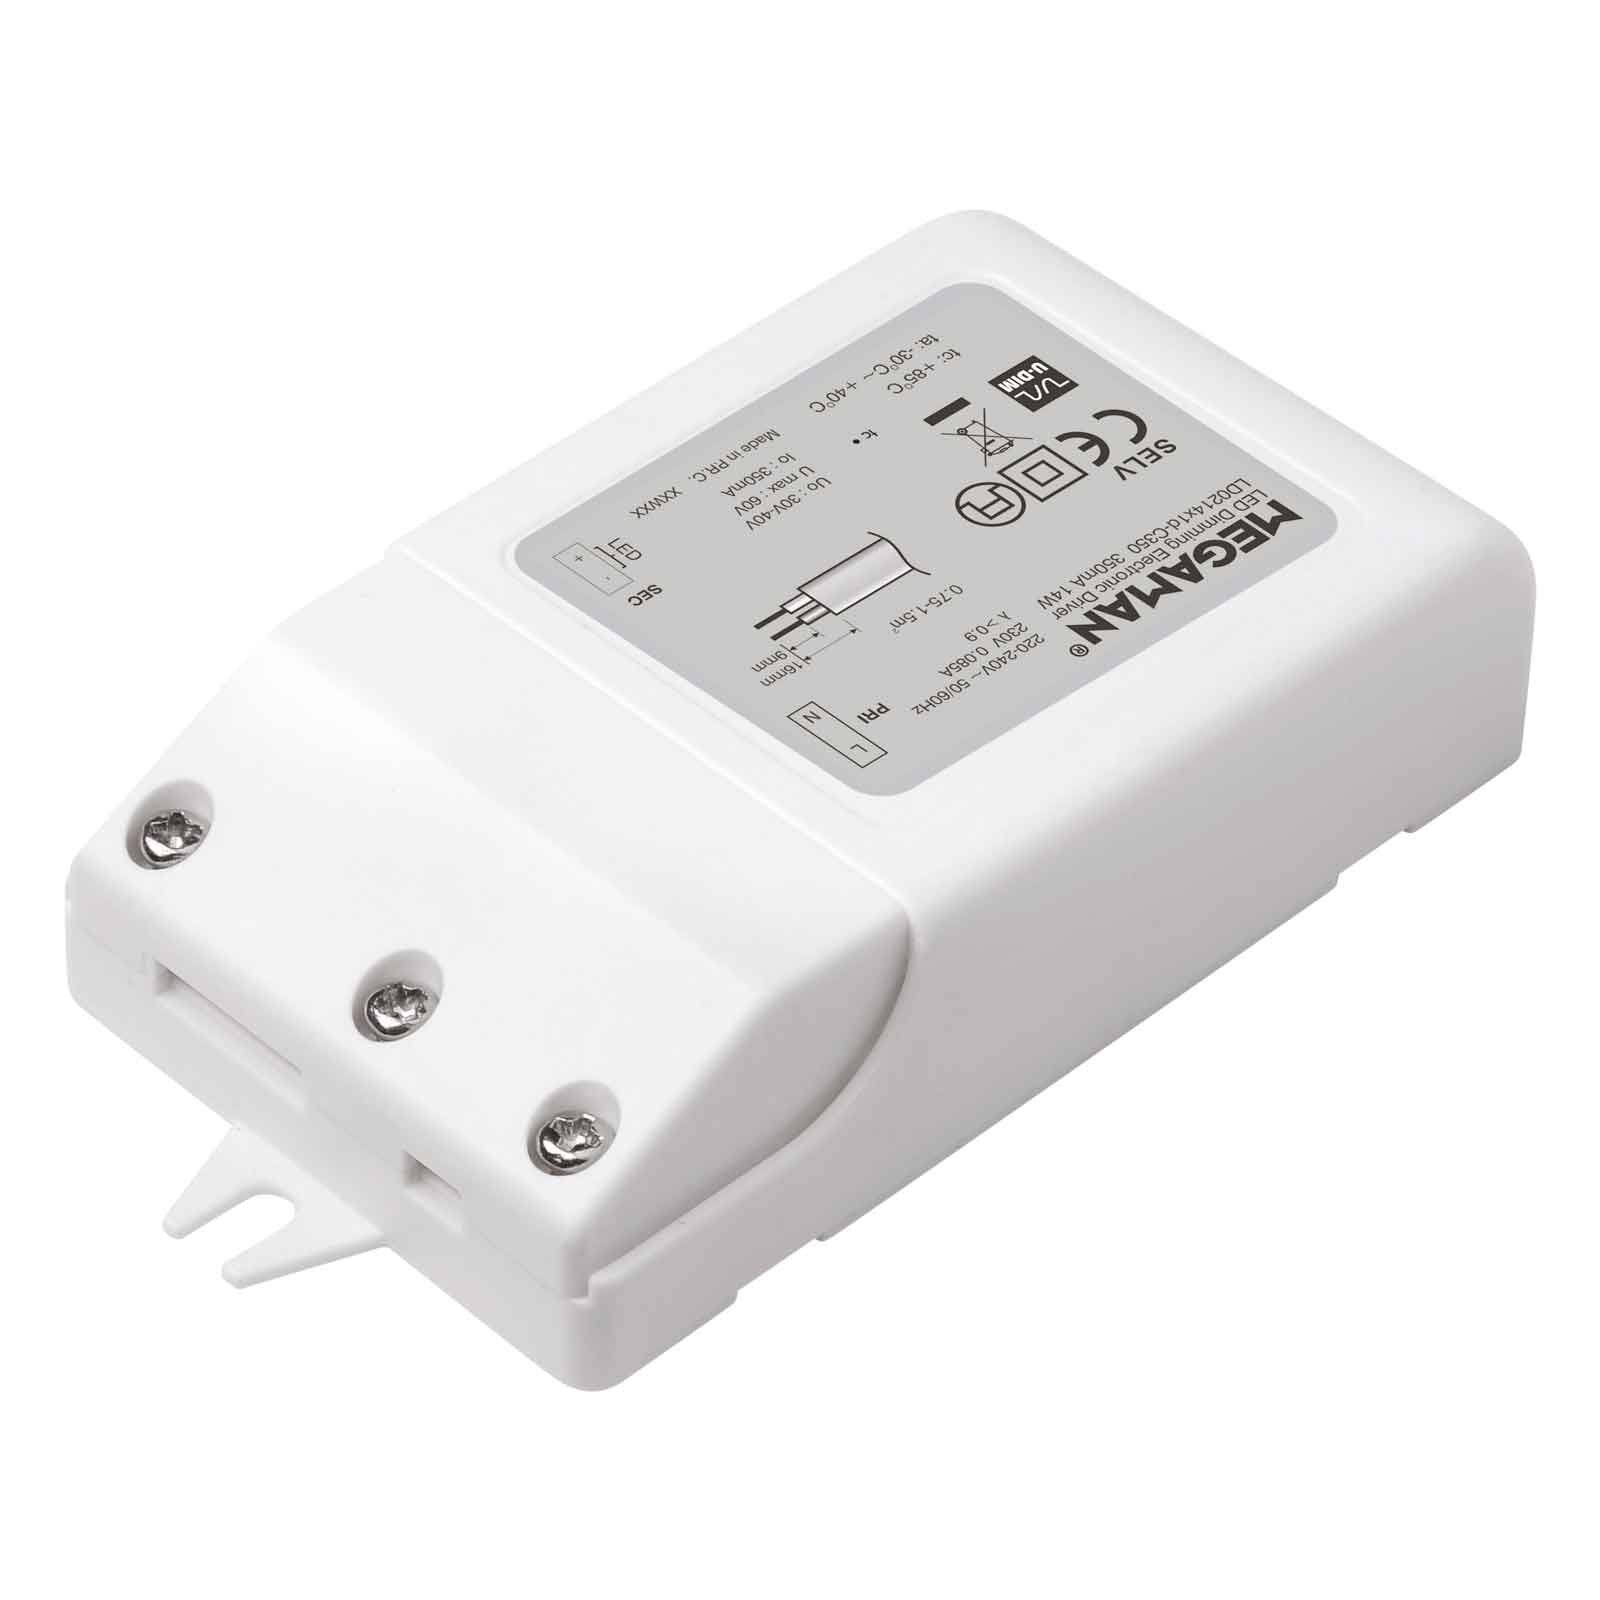 LED ovládač MM56015 pre Rico max. 31 W